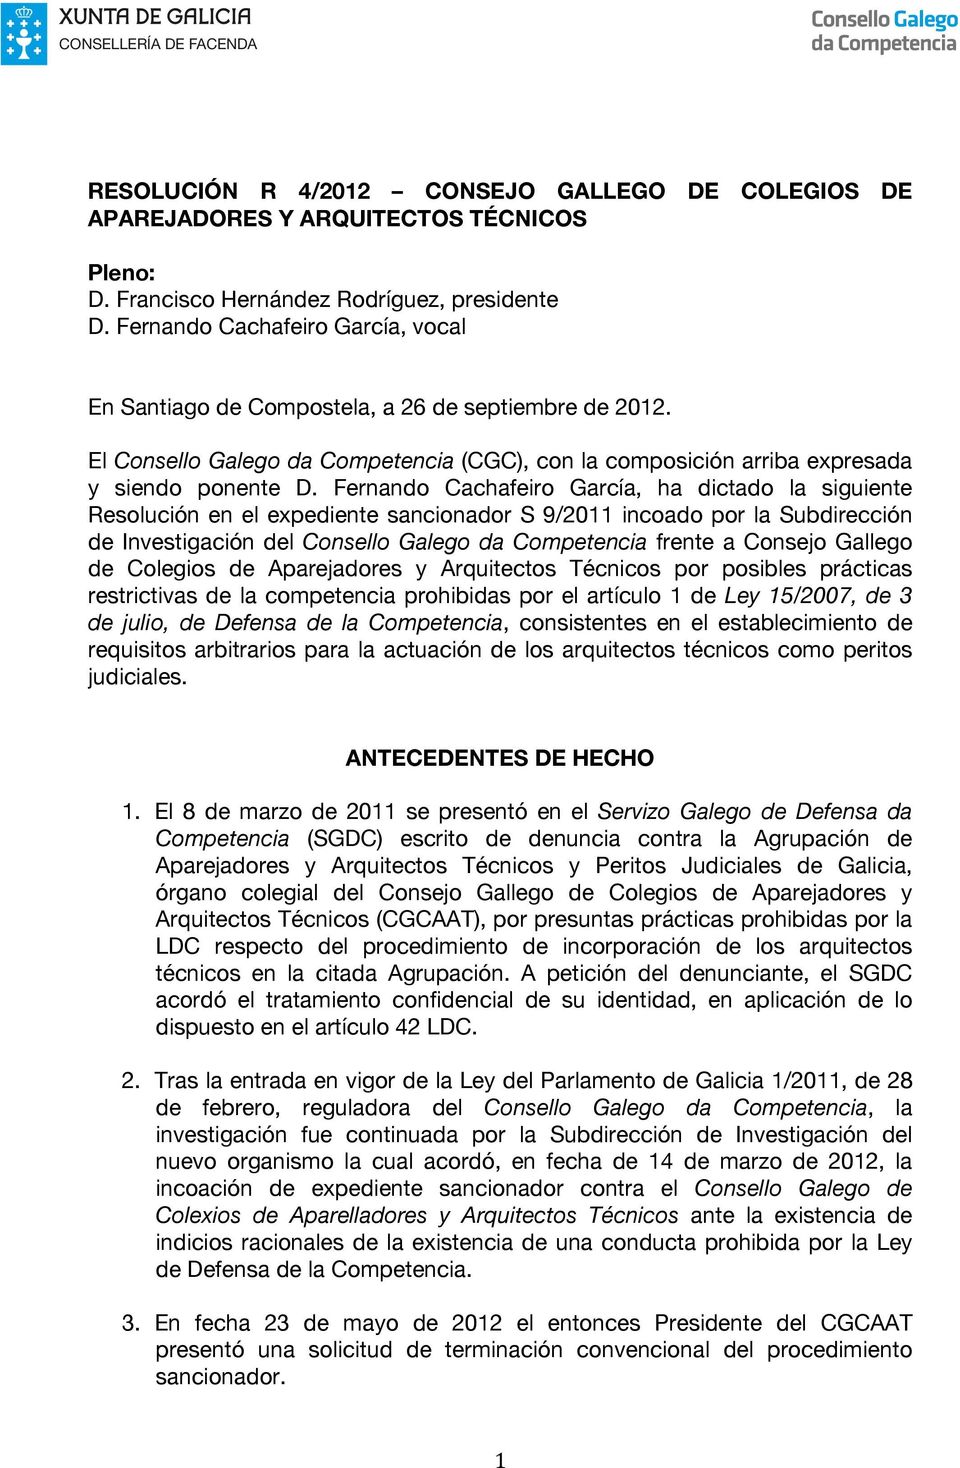 Fernando Cachafeiro García, ha dictado la siguiente Resolución en el expediente sancionador S 9/2011 incoado por la Subdirección de Investigación del Consello Galego da Competencia frente a Consejo